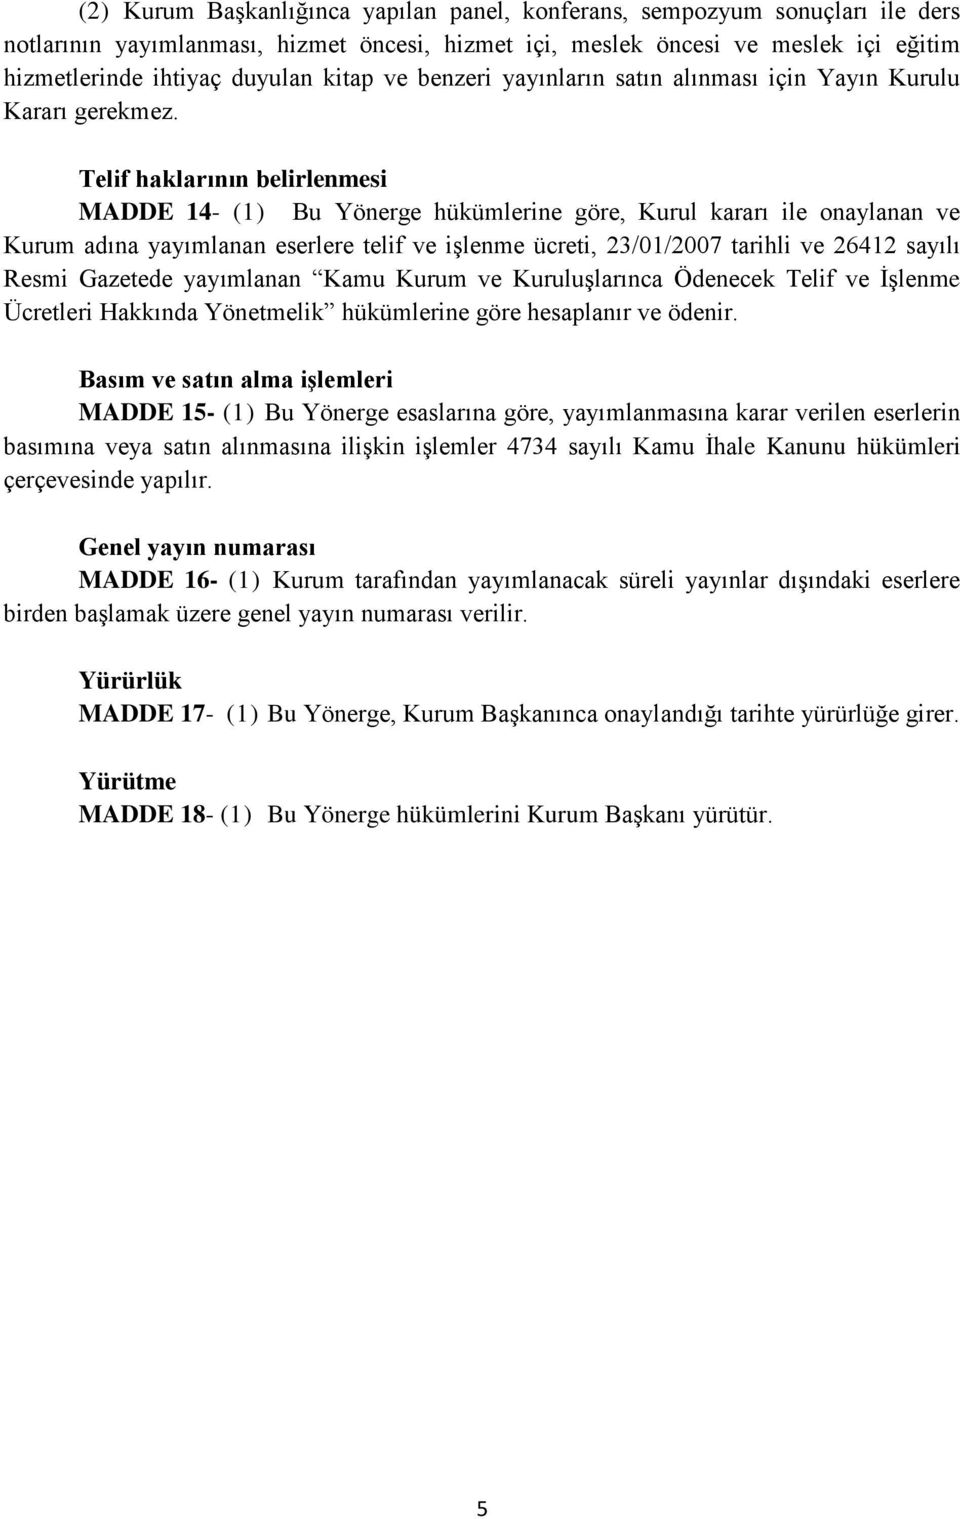 Telif haklarının belirlenmesi MADDE 14- (1) Bu Yönerge hükümlerine göre, Kurul kararı ile onaylanan ve Kurum adına yayımlanan eserlere telif ve işlenme ücreti, 23/01/2007 tarihli ve 26412 sayılı